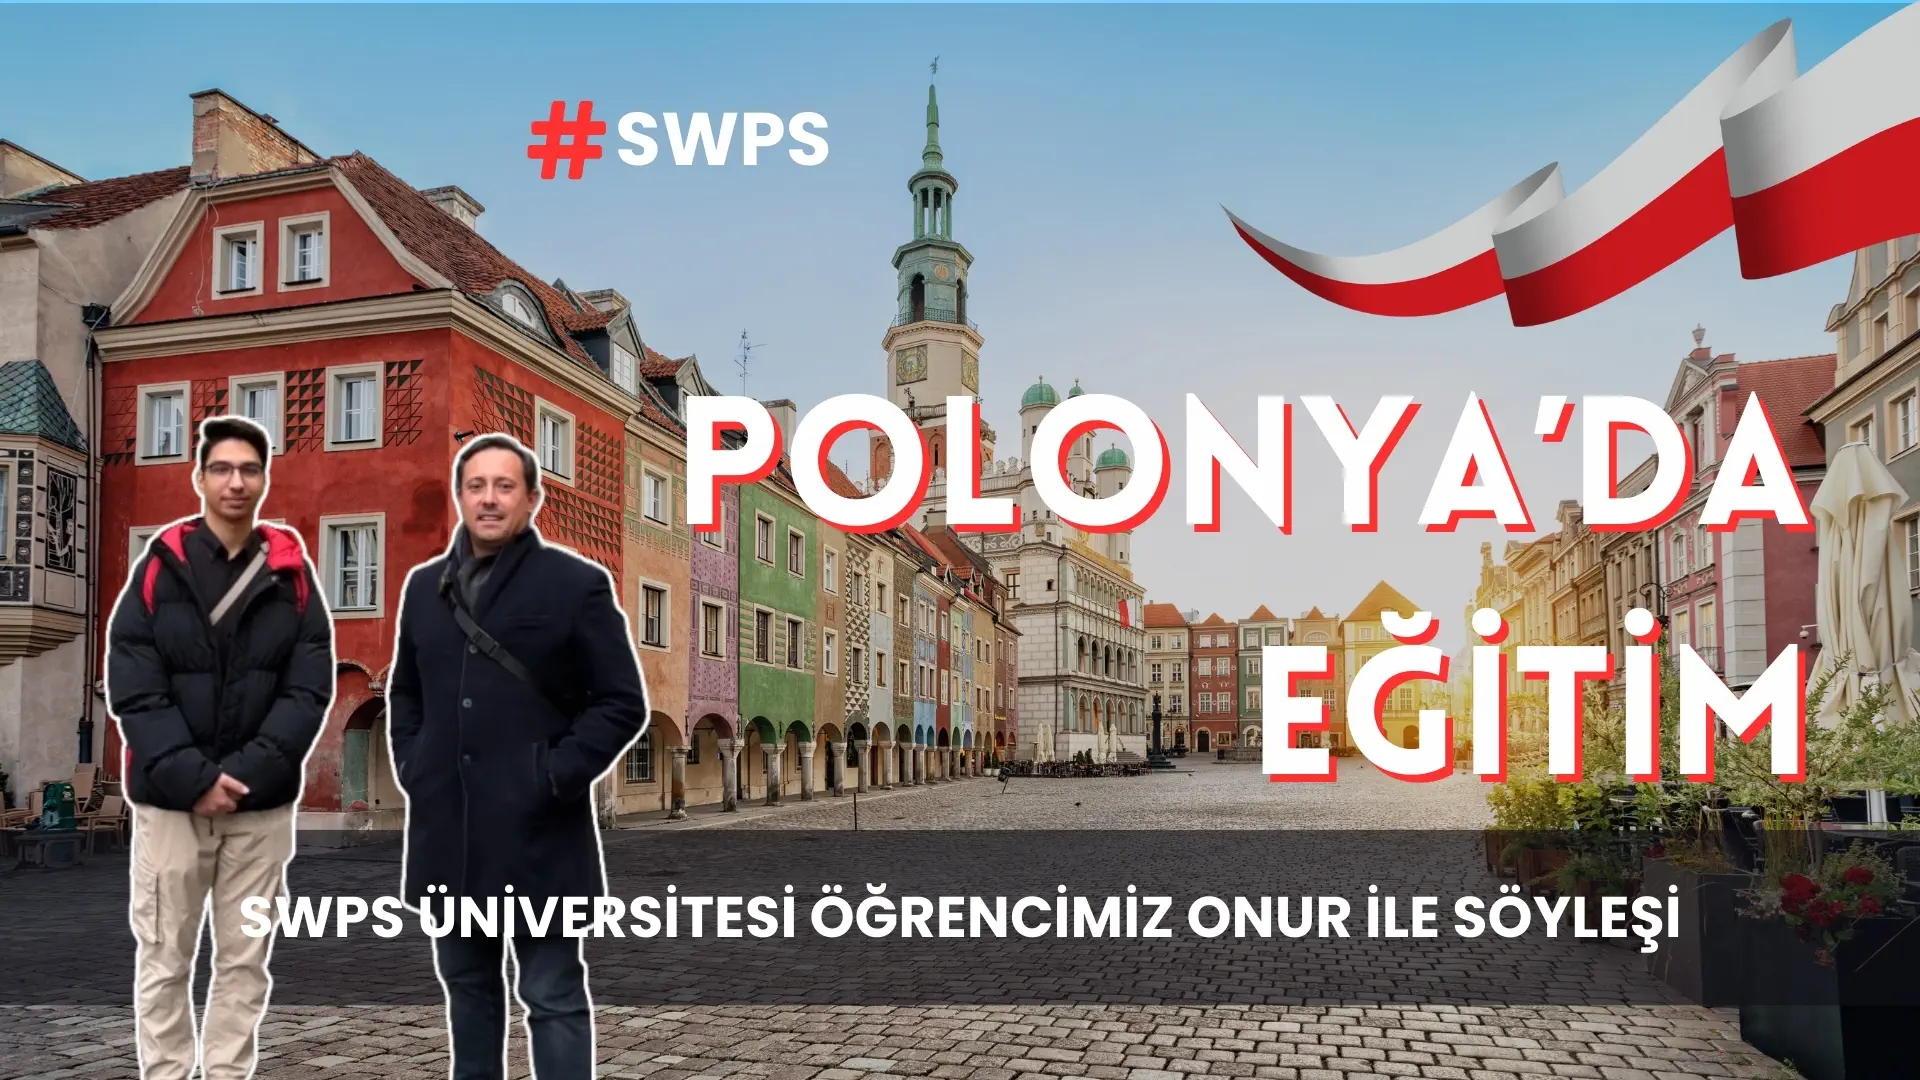 Polonya Varşova SWPS Üniversitesi Öğrencimiz Onur ile Polonya’da Eğitim Hakkında Söyleşi